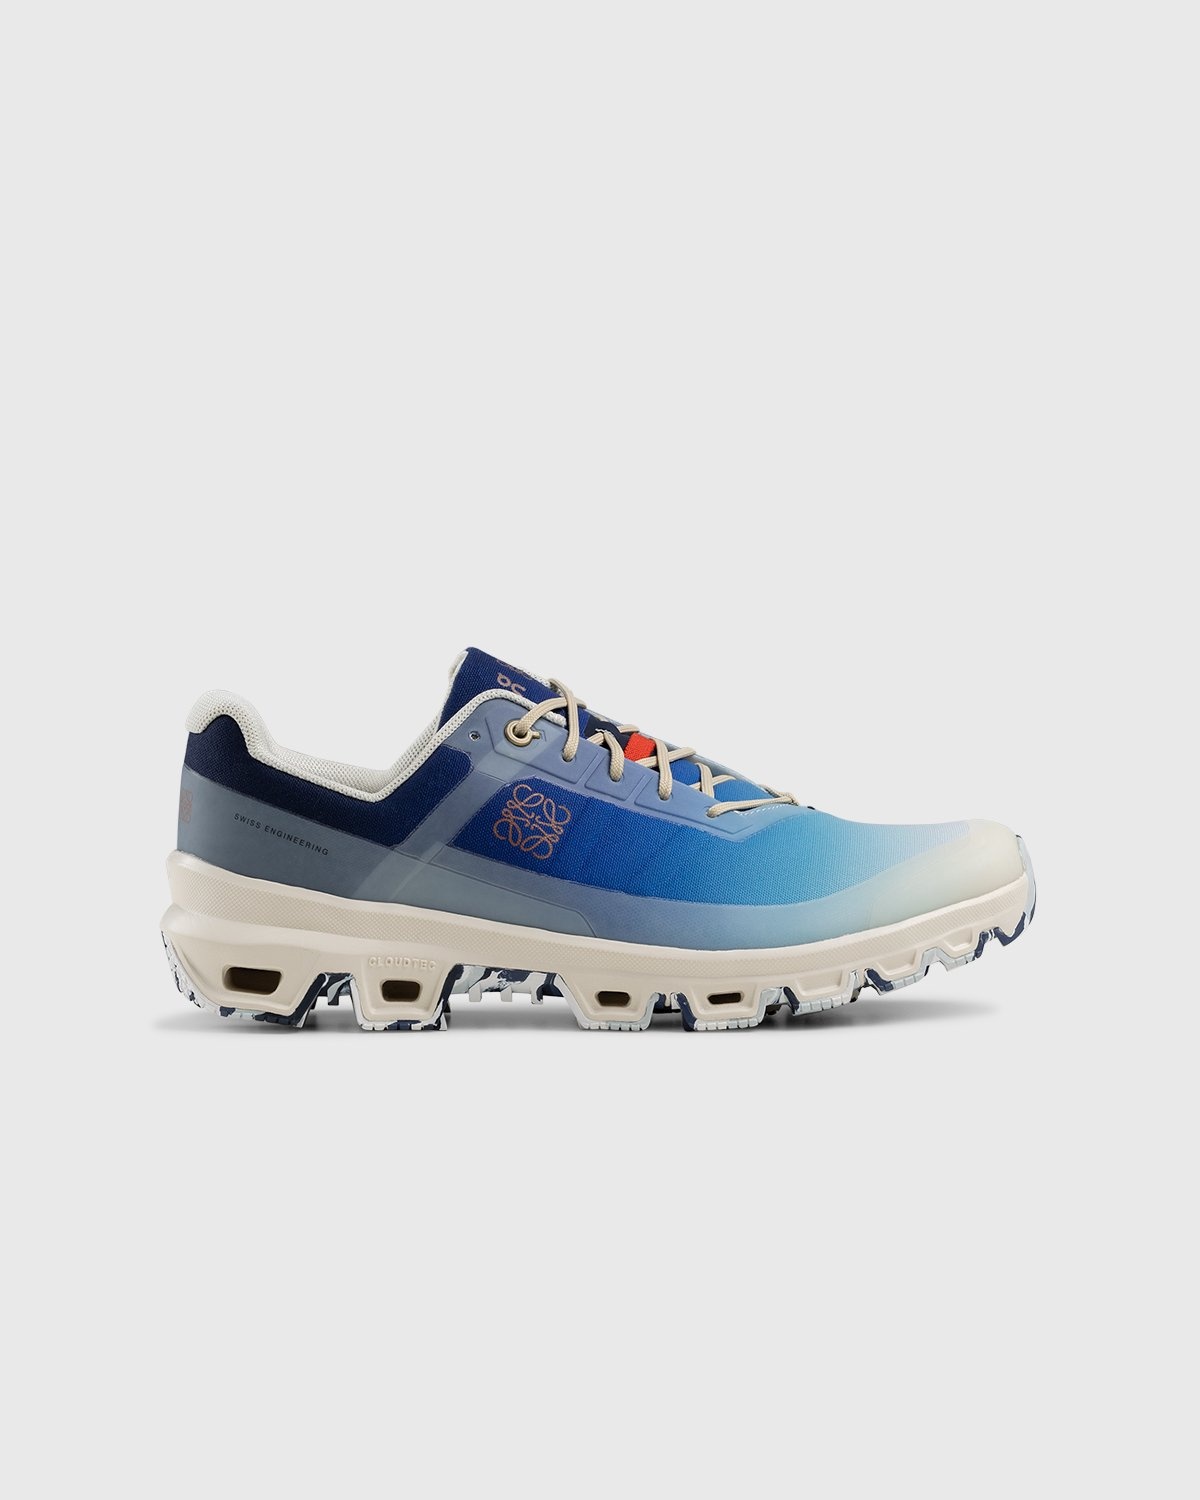 Loewe x On – Men's Cloudventure Gradient Blue - Sneakers - Blue - Image 1